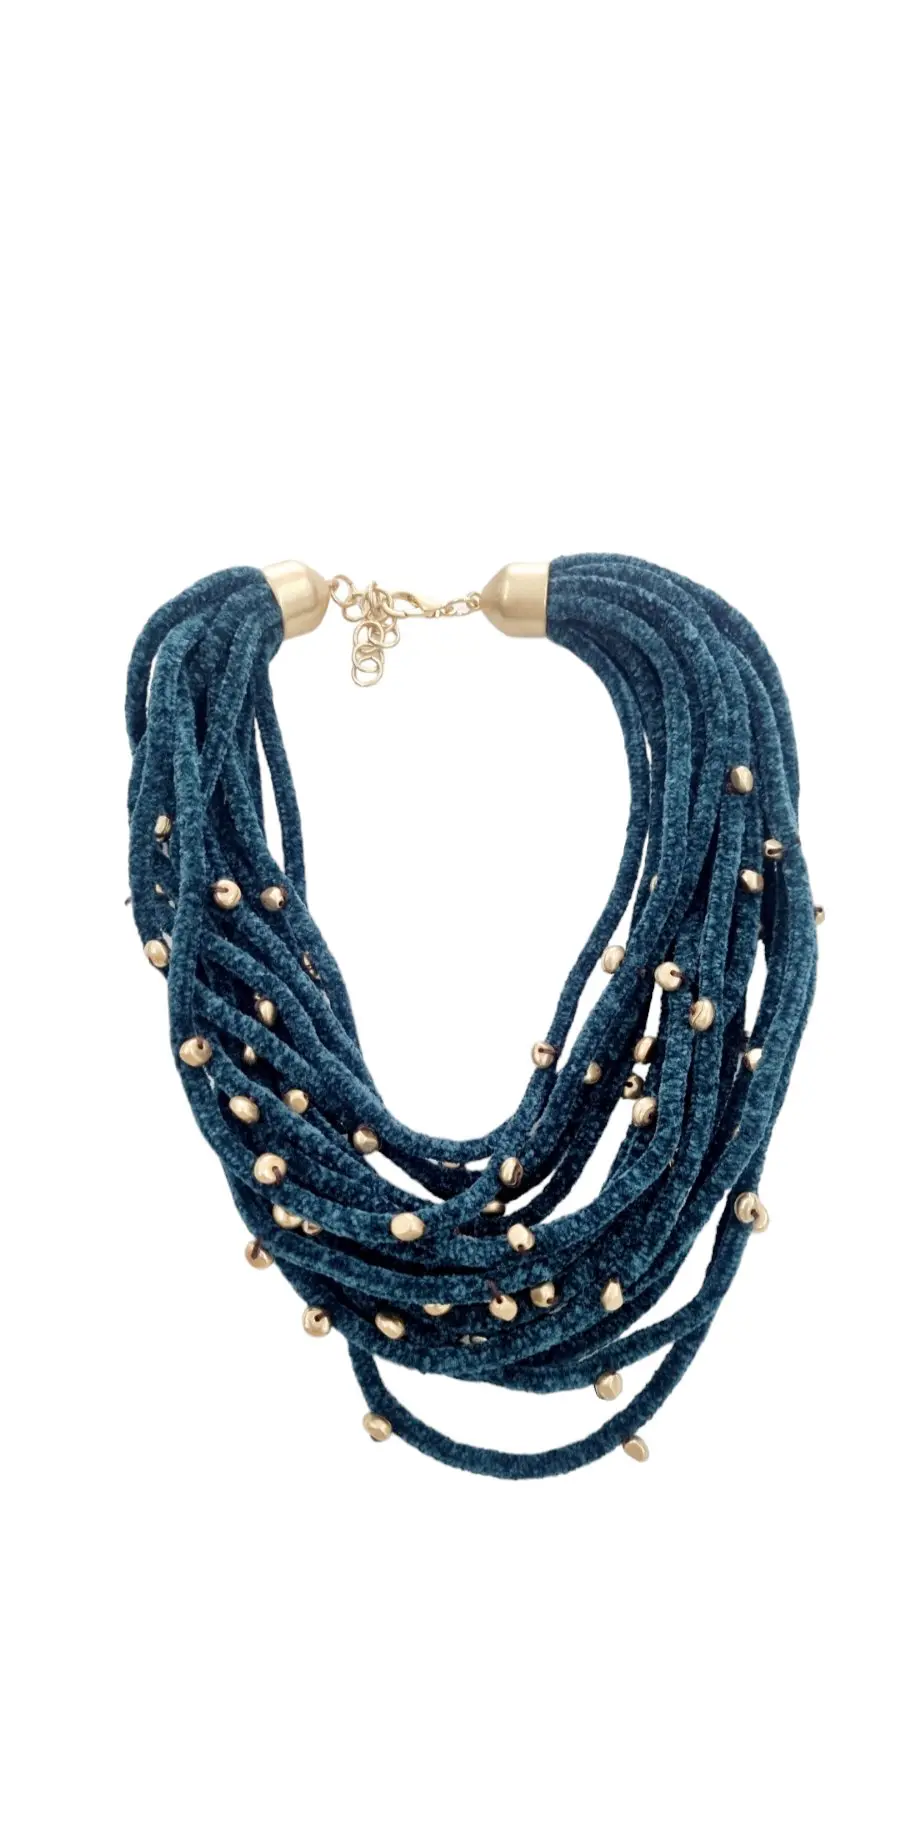 Verstellbare Halskette aus benzinfarbenem Chenille und goldenem Harz – Länge 58 cm